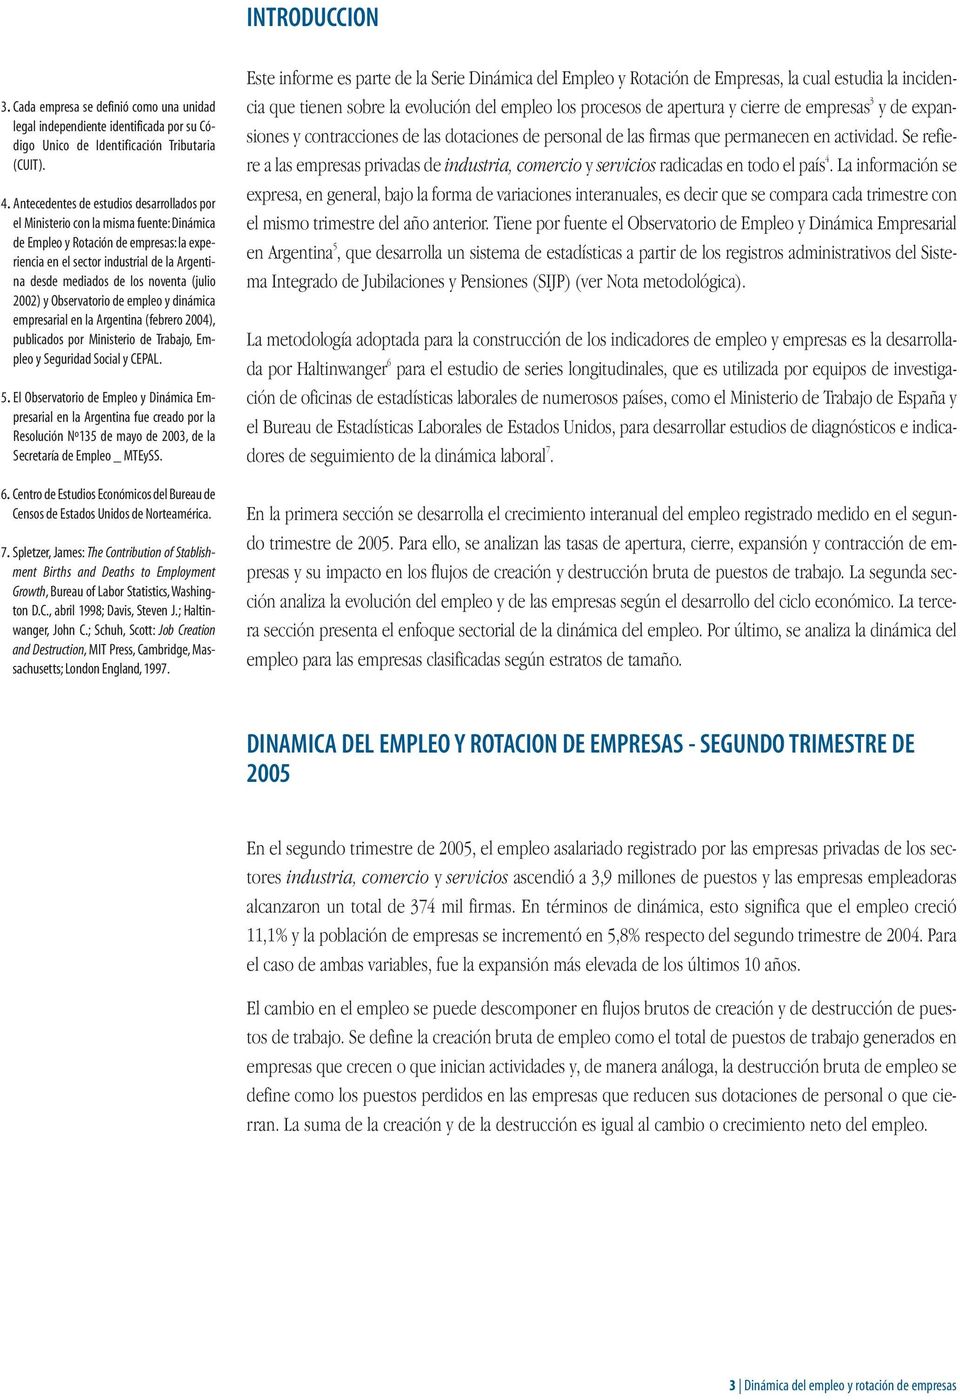 noventa (julio 2002) y Observatorio de empleo y dinámica empresarial en la Argentina (febrero 2004), publicados por Ministerio de Trabajo, Empleo y Seguridad Social y CEPAL. 5.